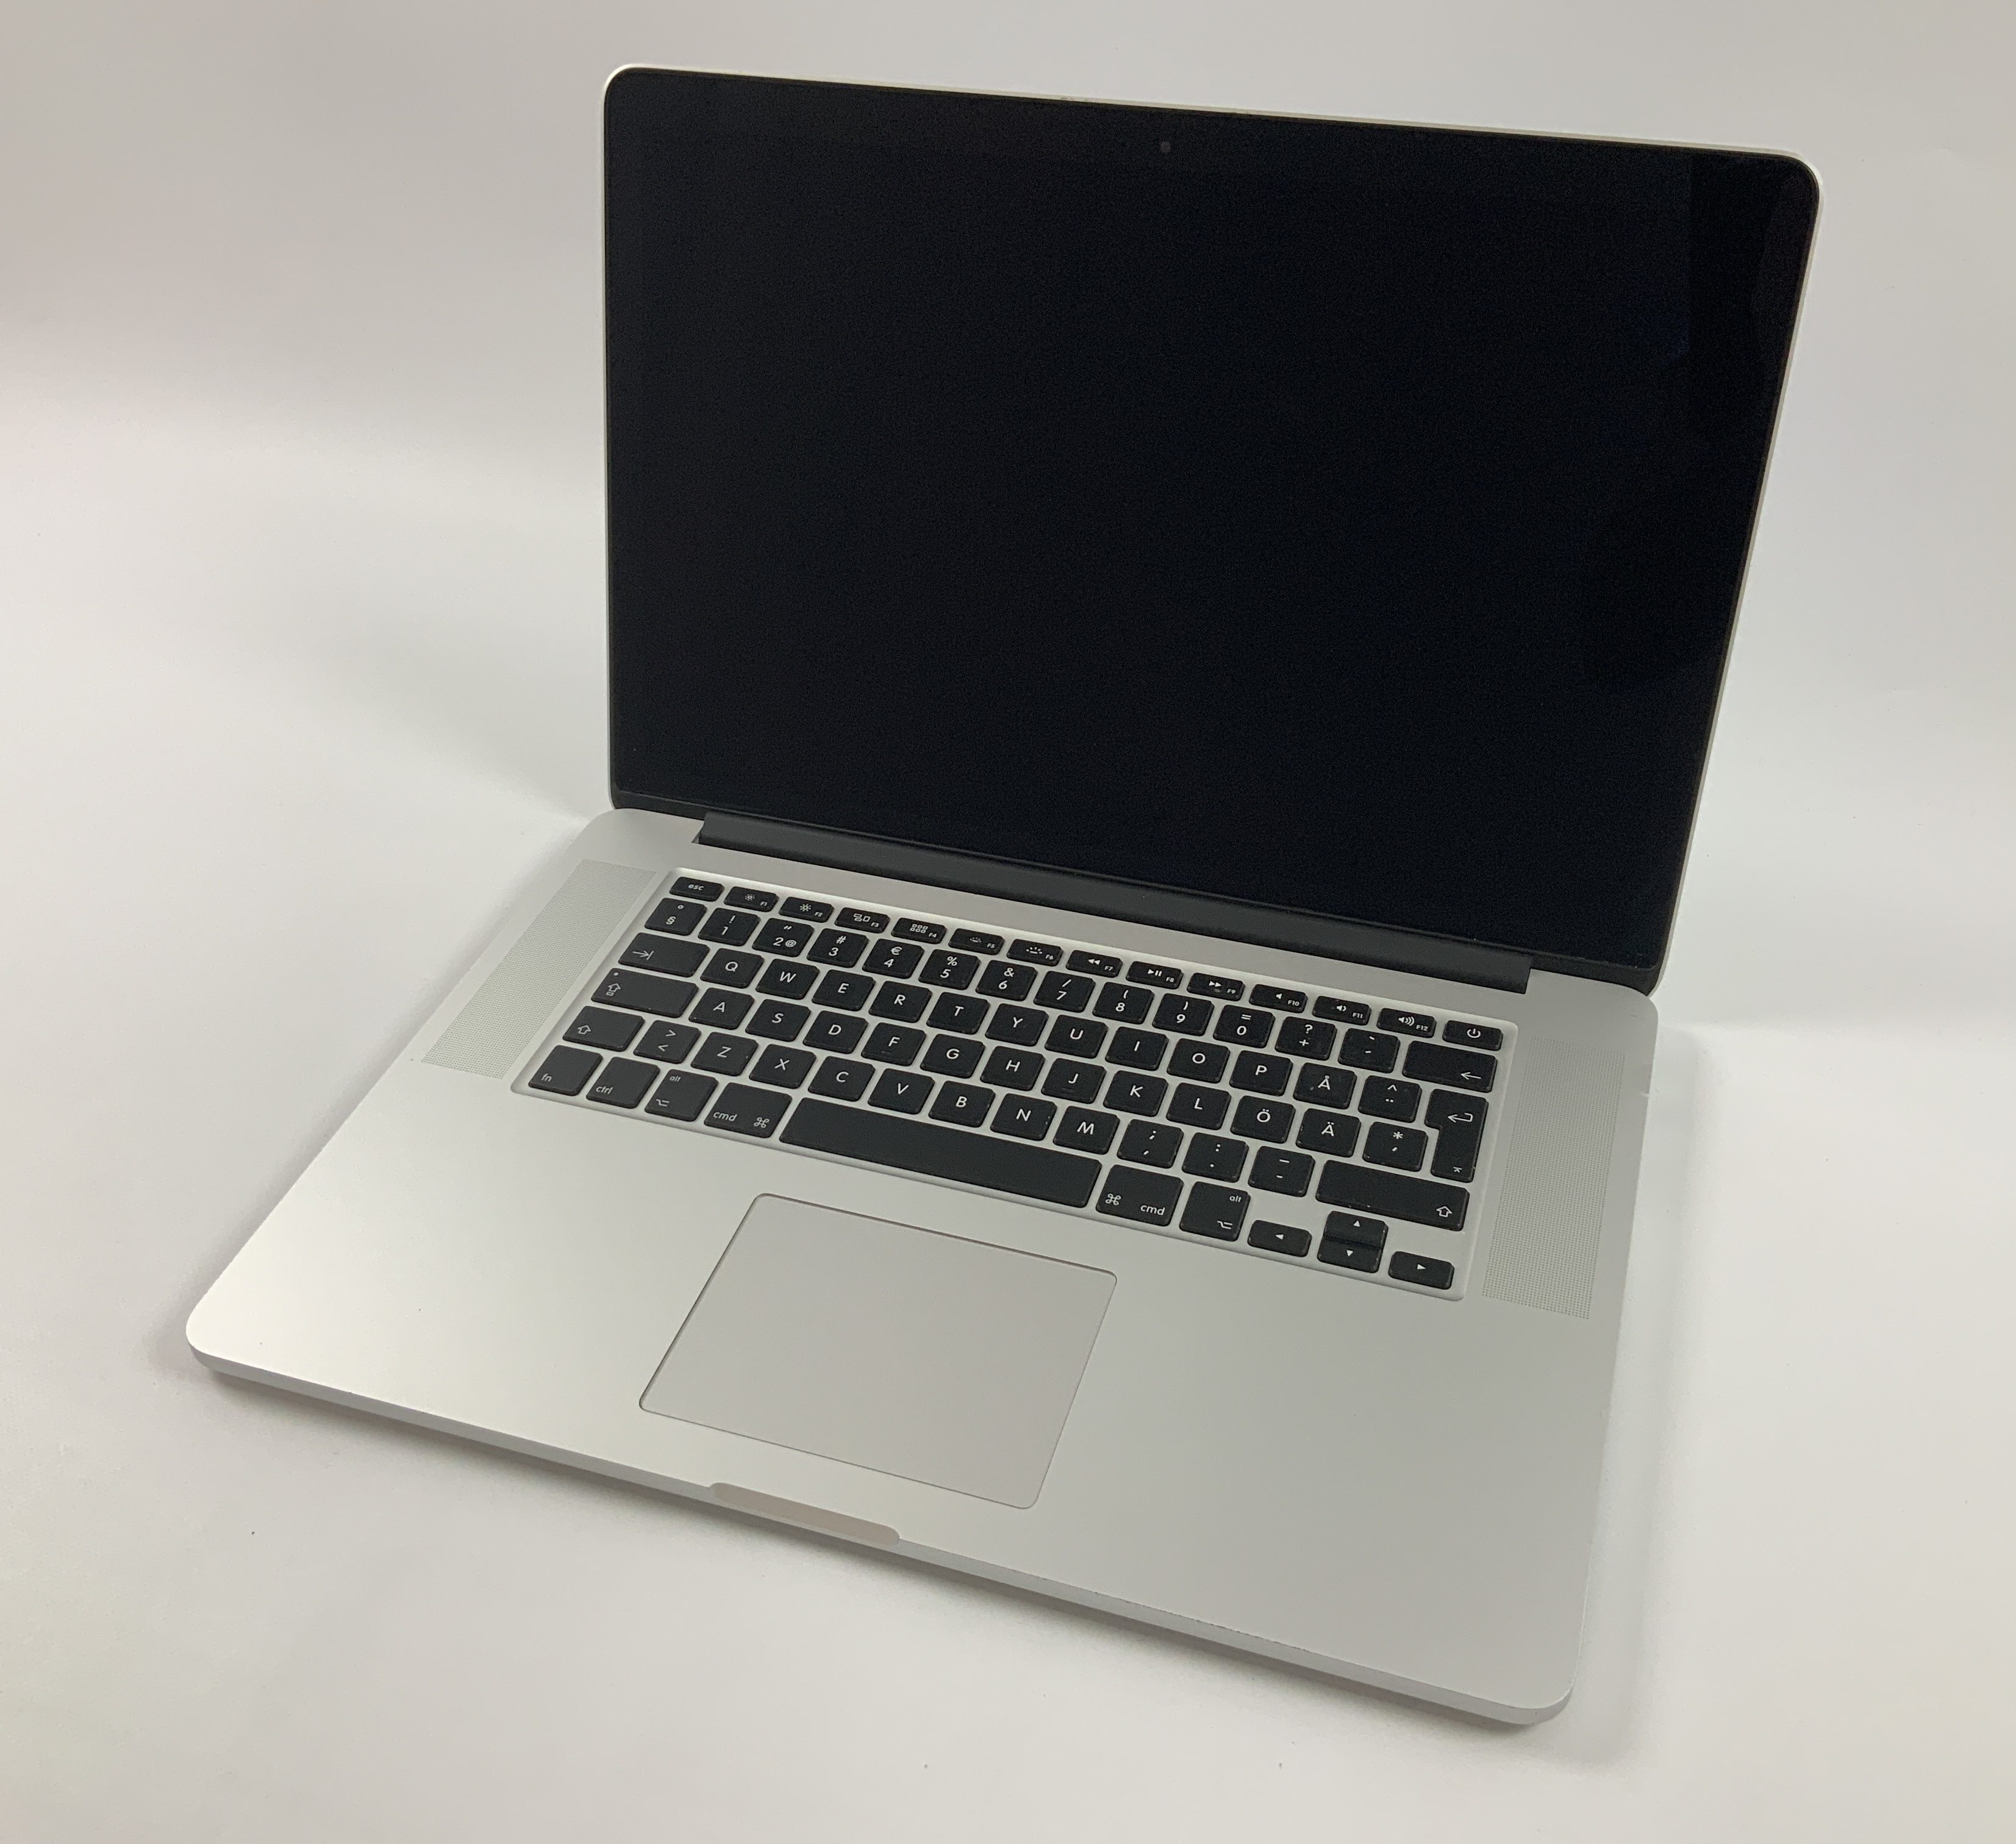 MacBook Pro Retina 15" Mid 2015 (Intel Quad-Core i7 2.2 GHz 16 GB RAM 256 GB SSD), Intel Quad-Core i7 2.2 GHz, 16 GB RAM, 256 GB SSD, immagine 1